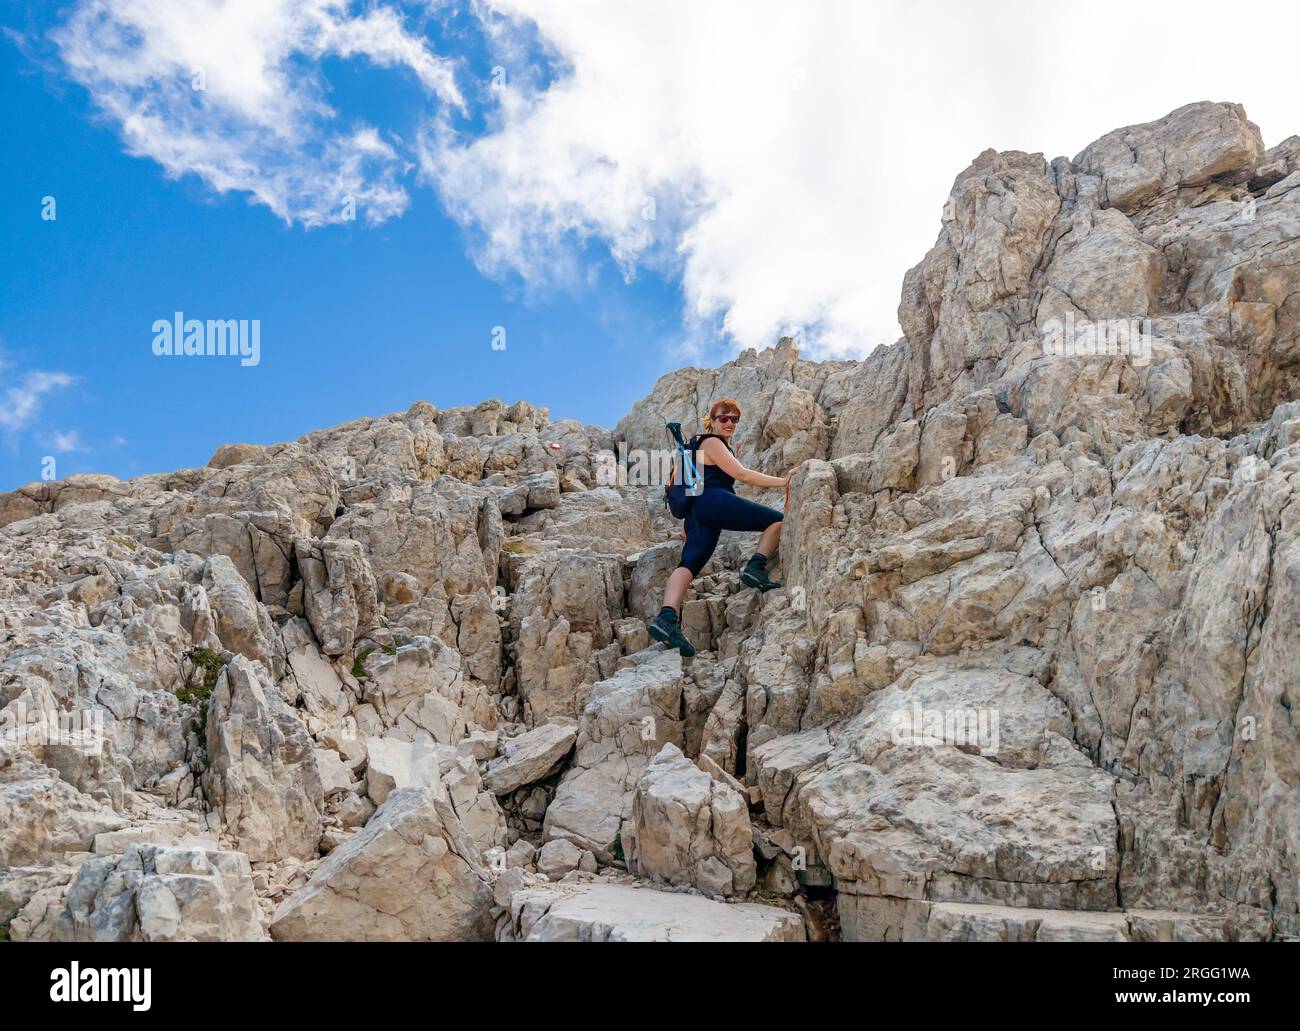 Gran Sasso, Italy - The alpinistic way to Vetta Occidentale of Corno Grande, 2912 meters in Abruzzo region, named Via delle Creste or Cresta Ovest. Stock Photo